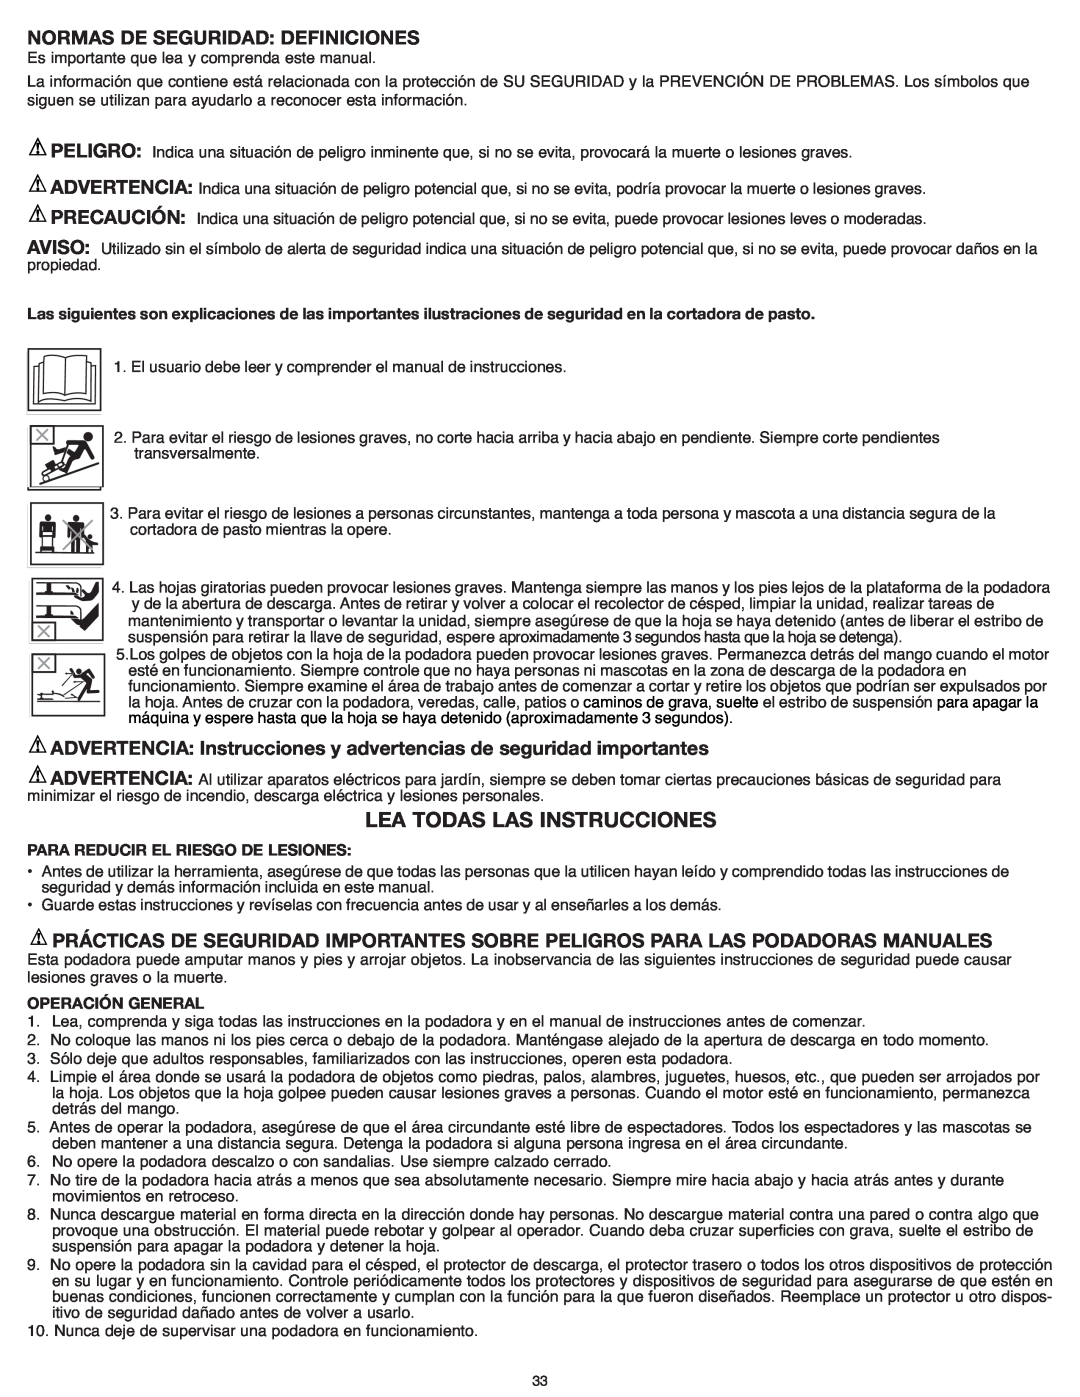 Black & Decker CM1836R Lea Todas Las Instrucciones, ADVERTENCIA Instrucciones y advertencias de seguridad importantes 